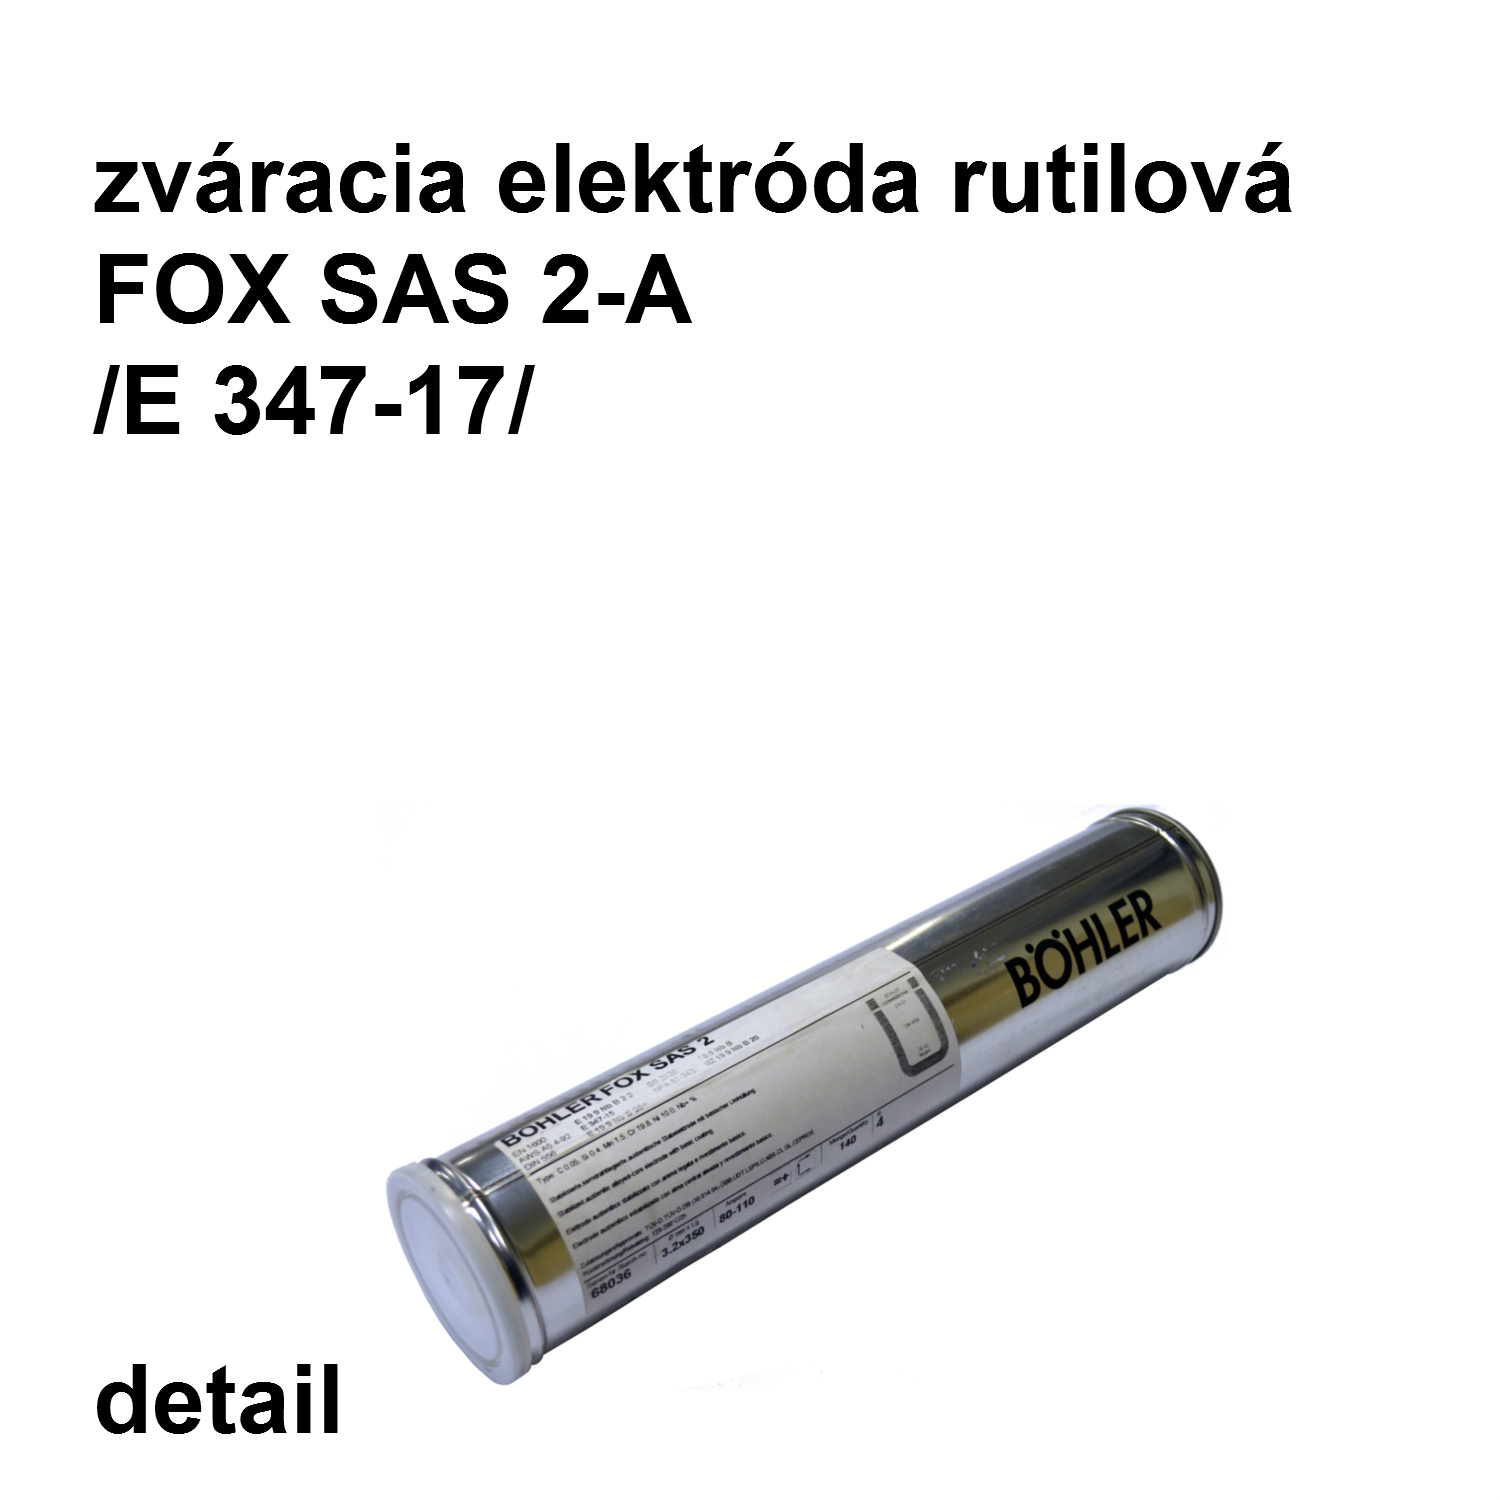 zváracia elektróda FOX SAS 2-A 3,2/350 mm, E 347-14 rutilová elektróda na nerez